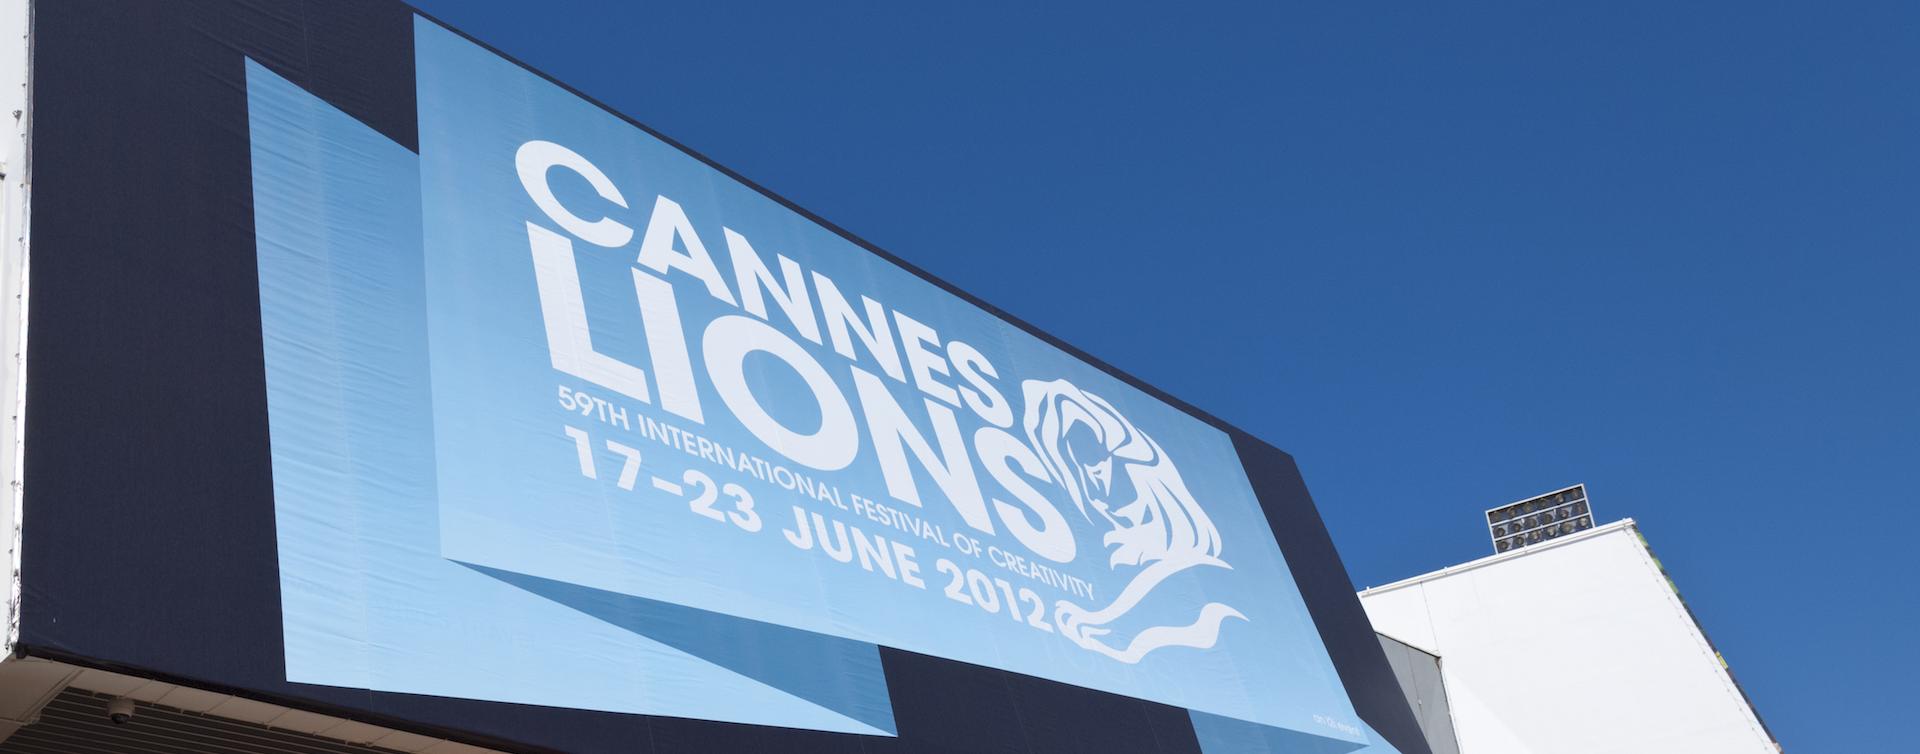 Location d’appartements durant le Cannes-Lions